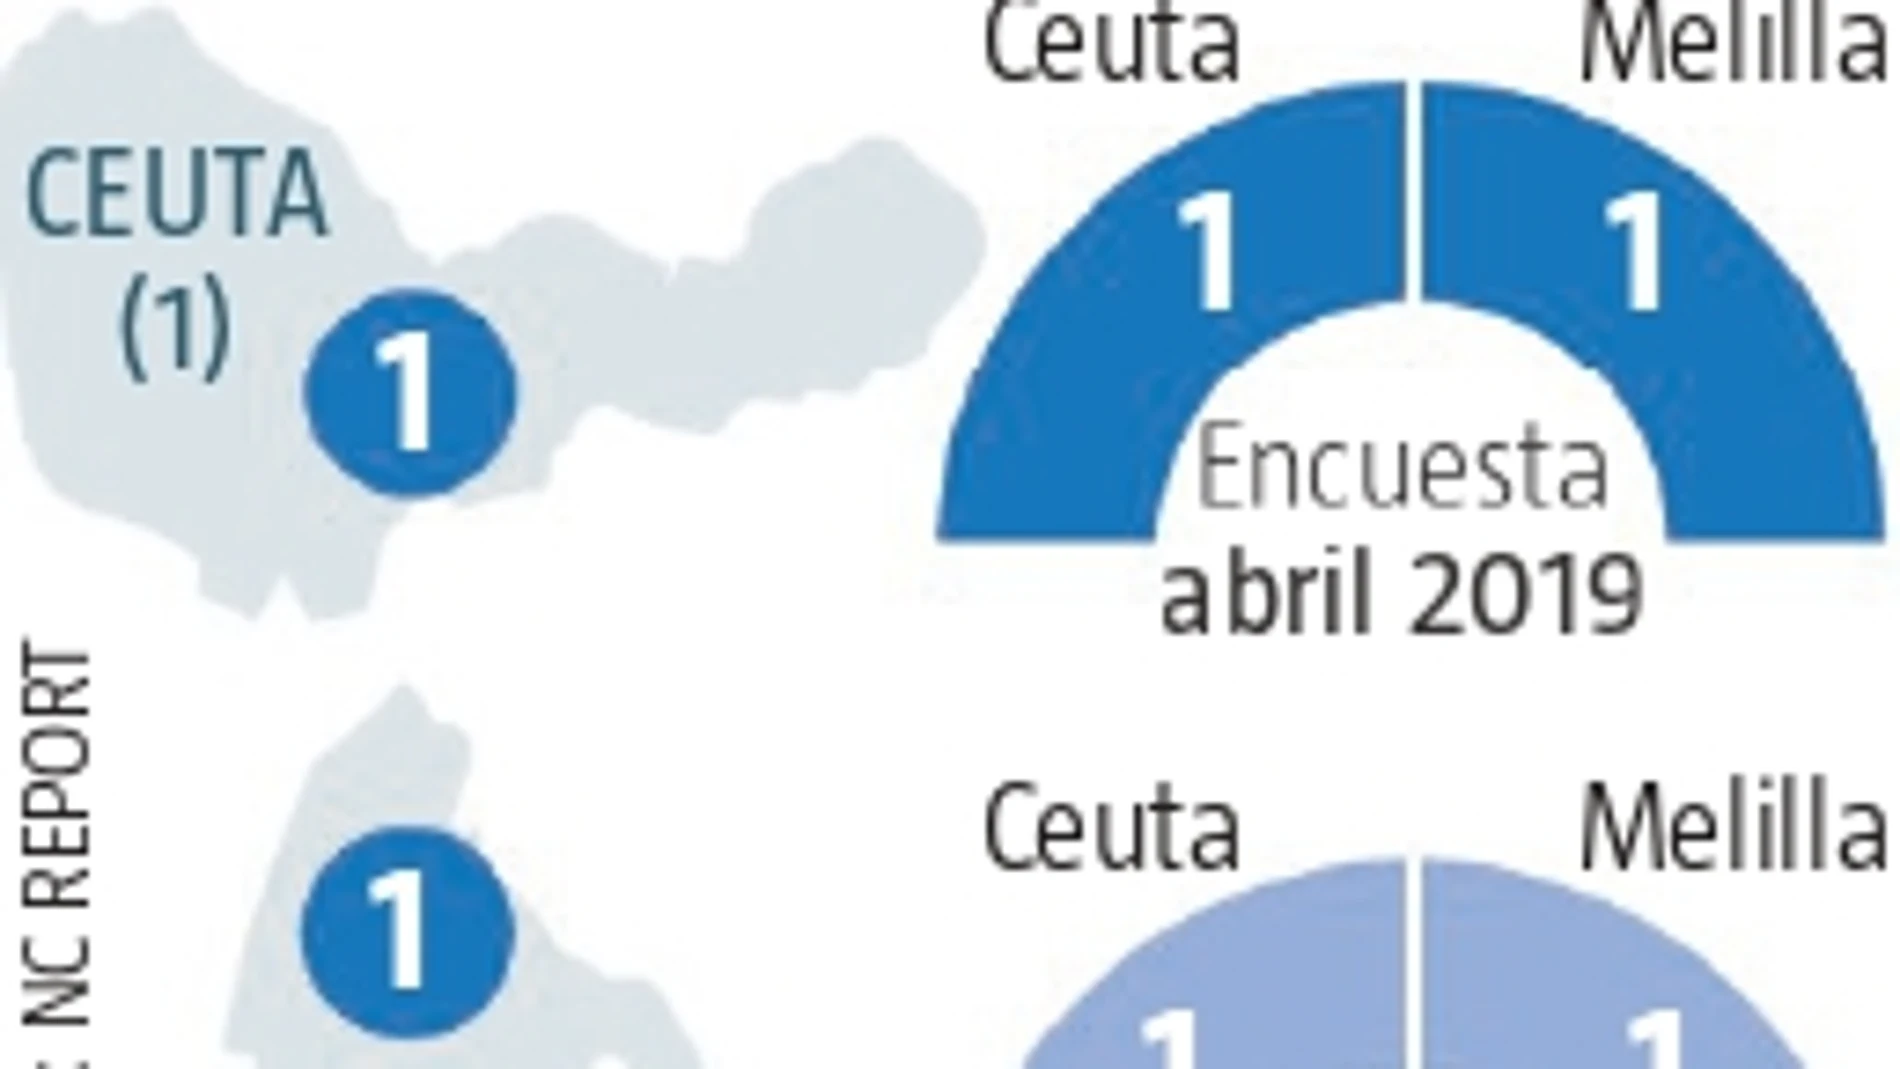 Encuesta electoral Ceuta y Melilla: Los populares ceden terreno pero conservan sus feudos